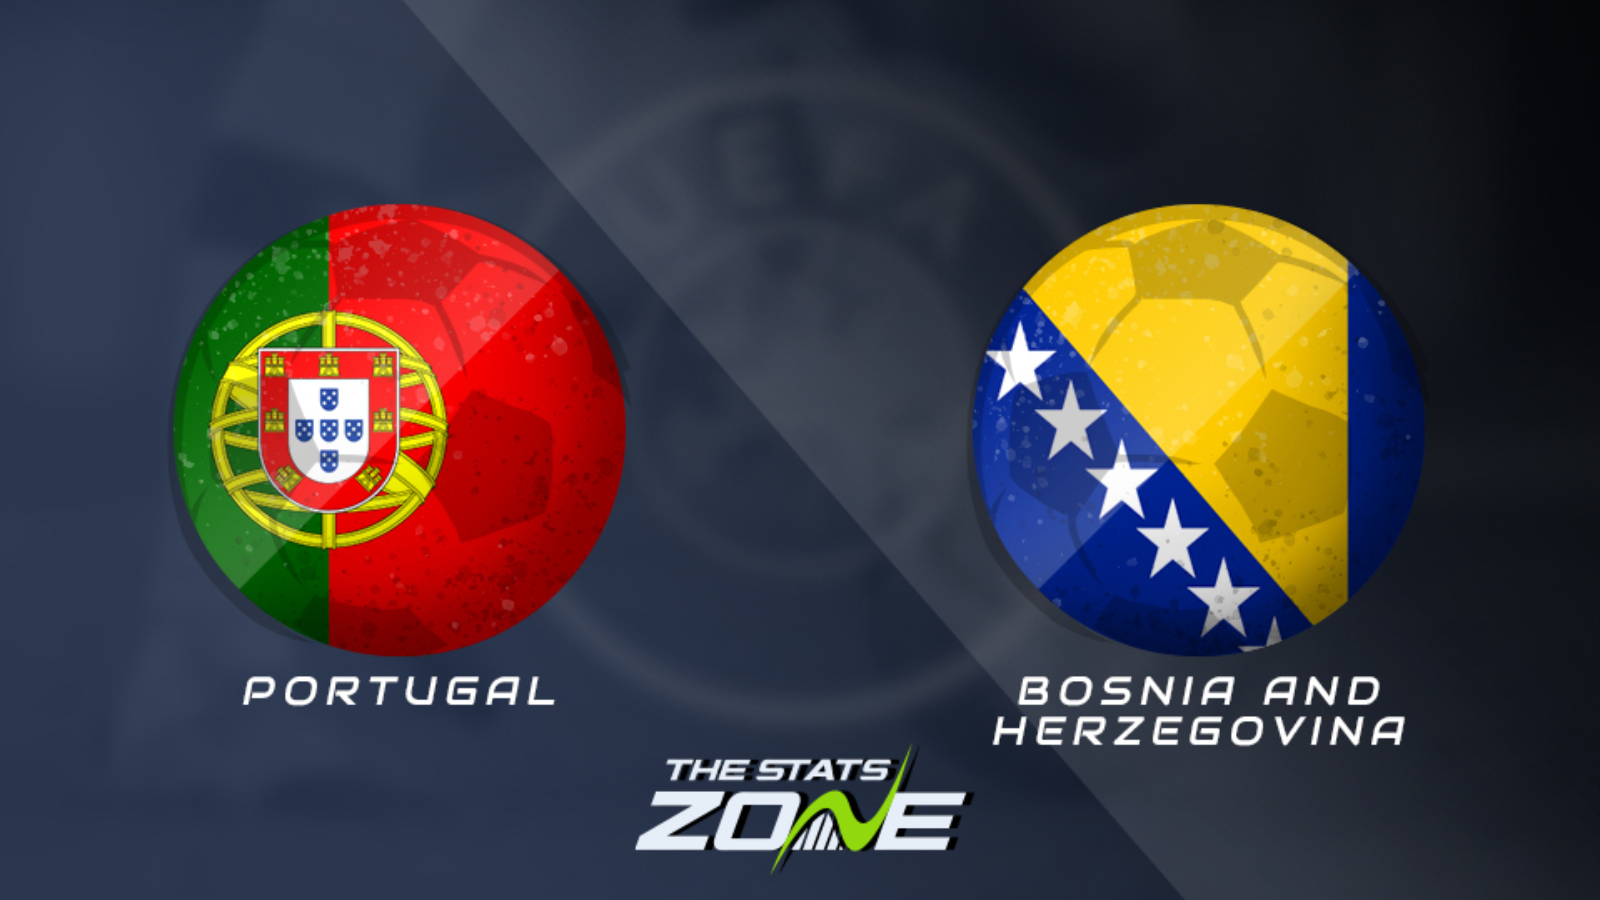 Portugal vs BosniaHerzegovina Group J Preview & Prediction UEFA